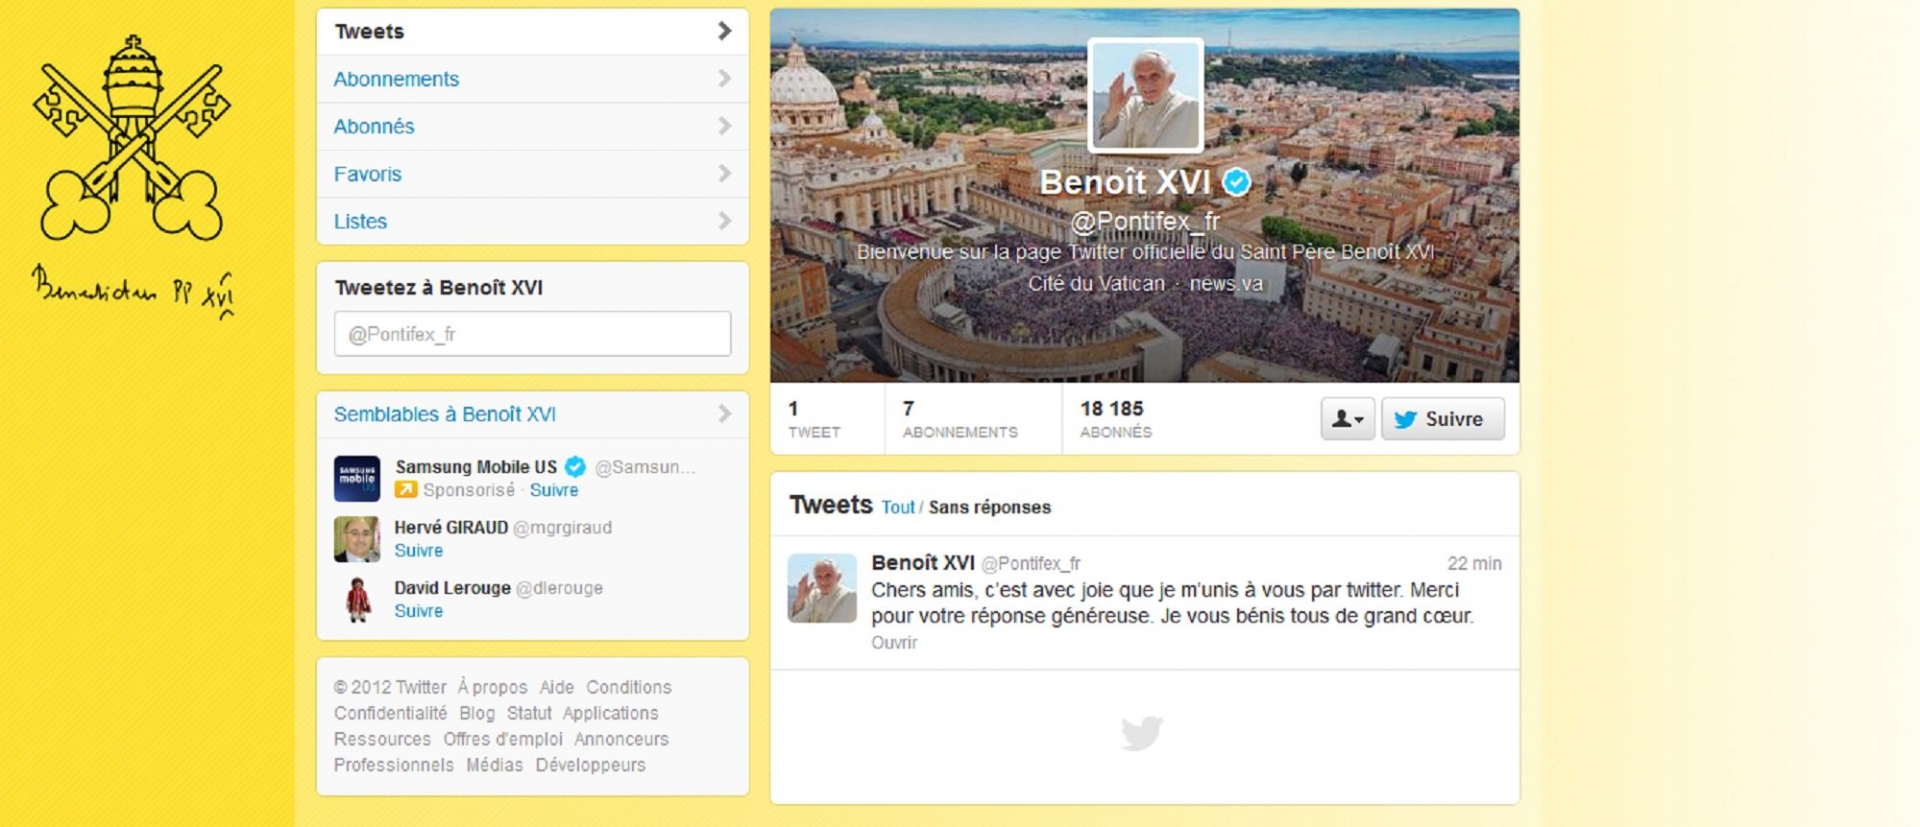 Le pape a écrit son premier tweet, en huit langues, dans les huit comptes identifiés @Pontifex